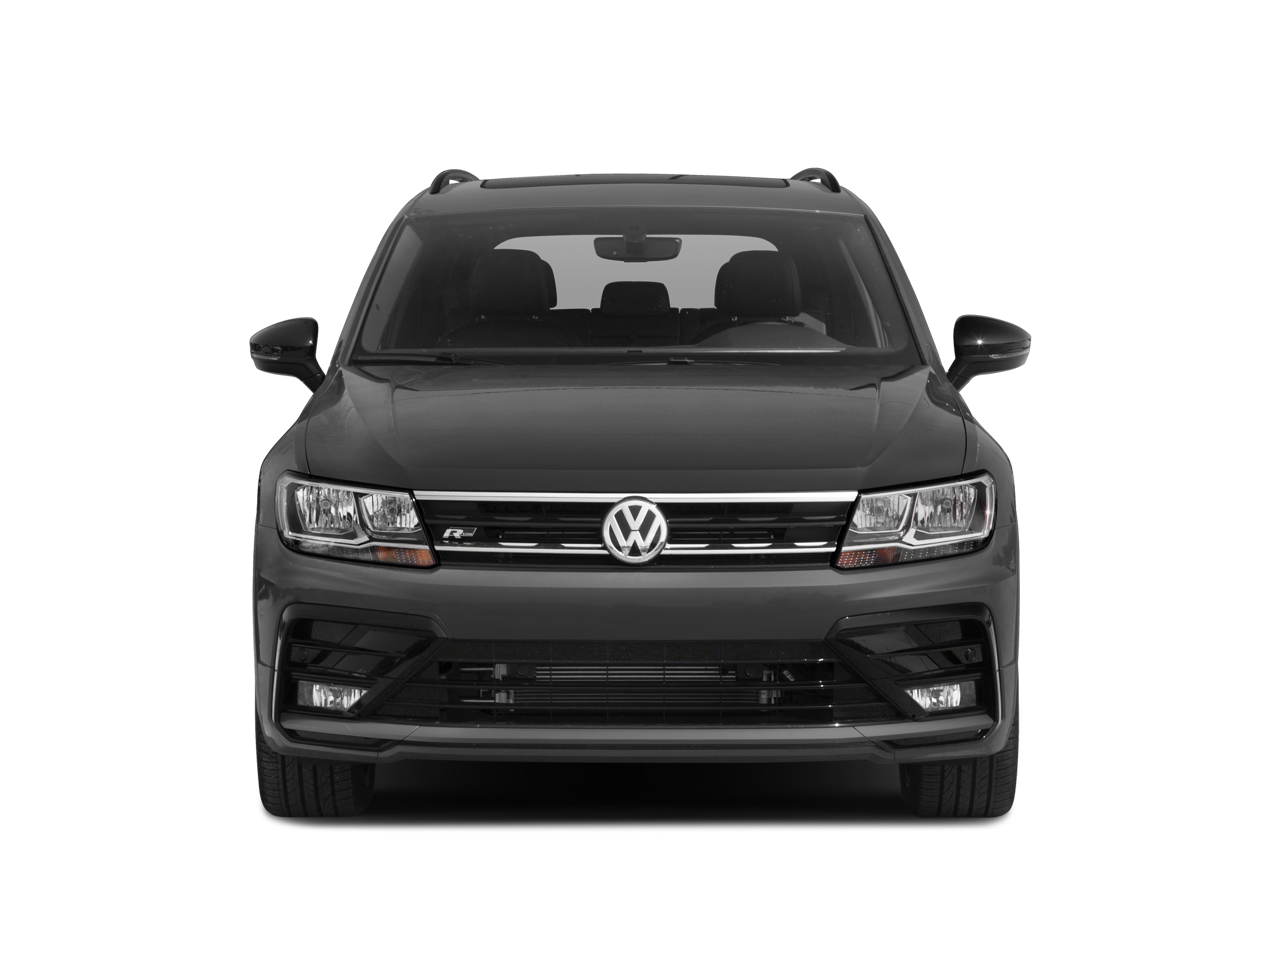 2021 Volkswagen Tiguan SE R-Line Black 4Motion